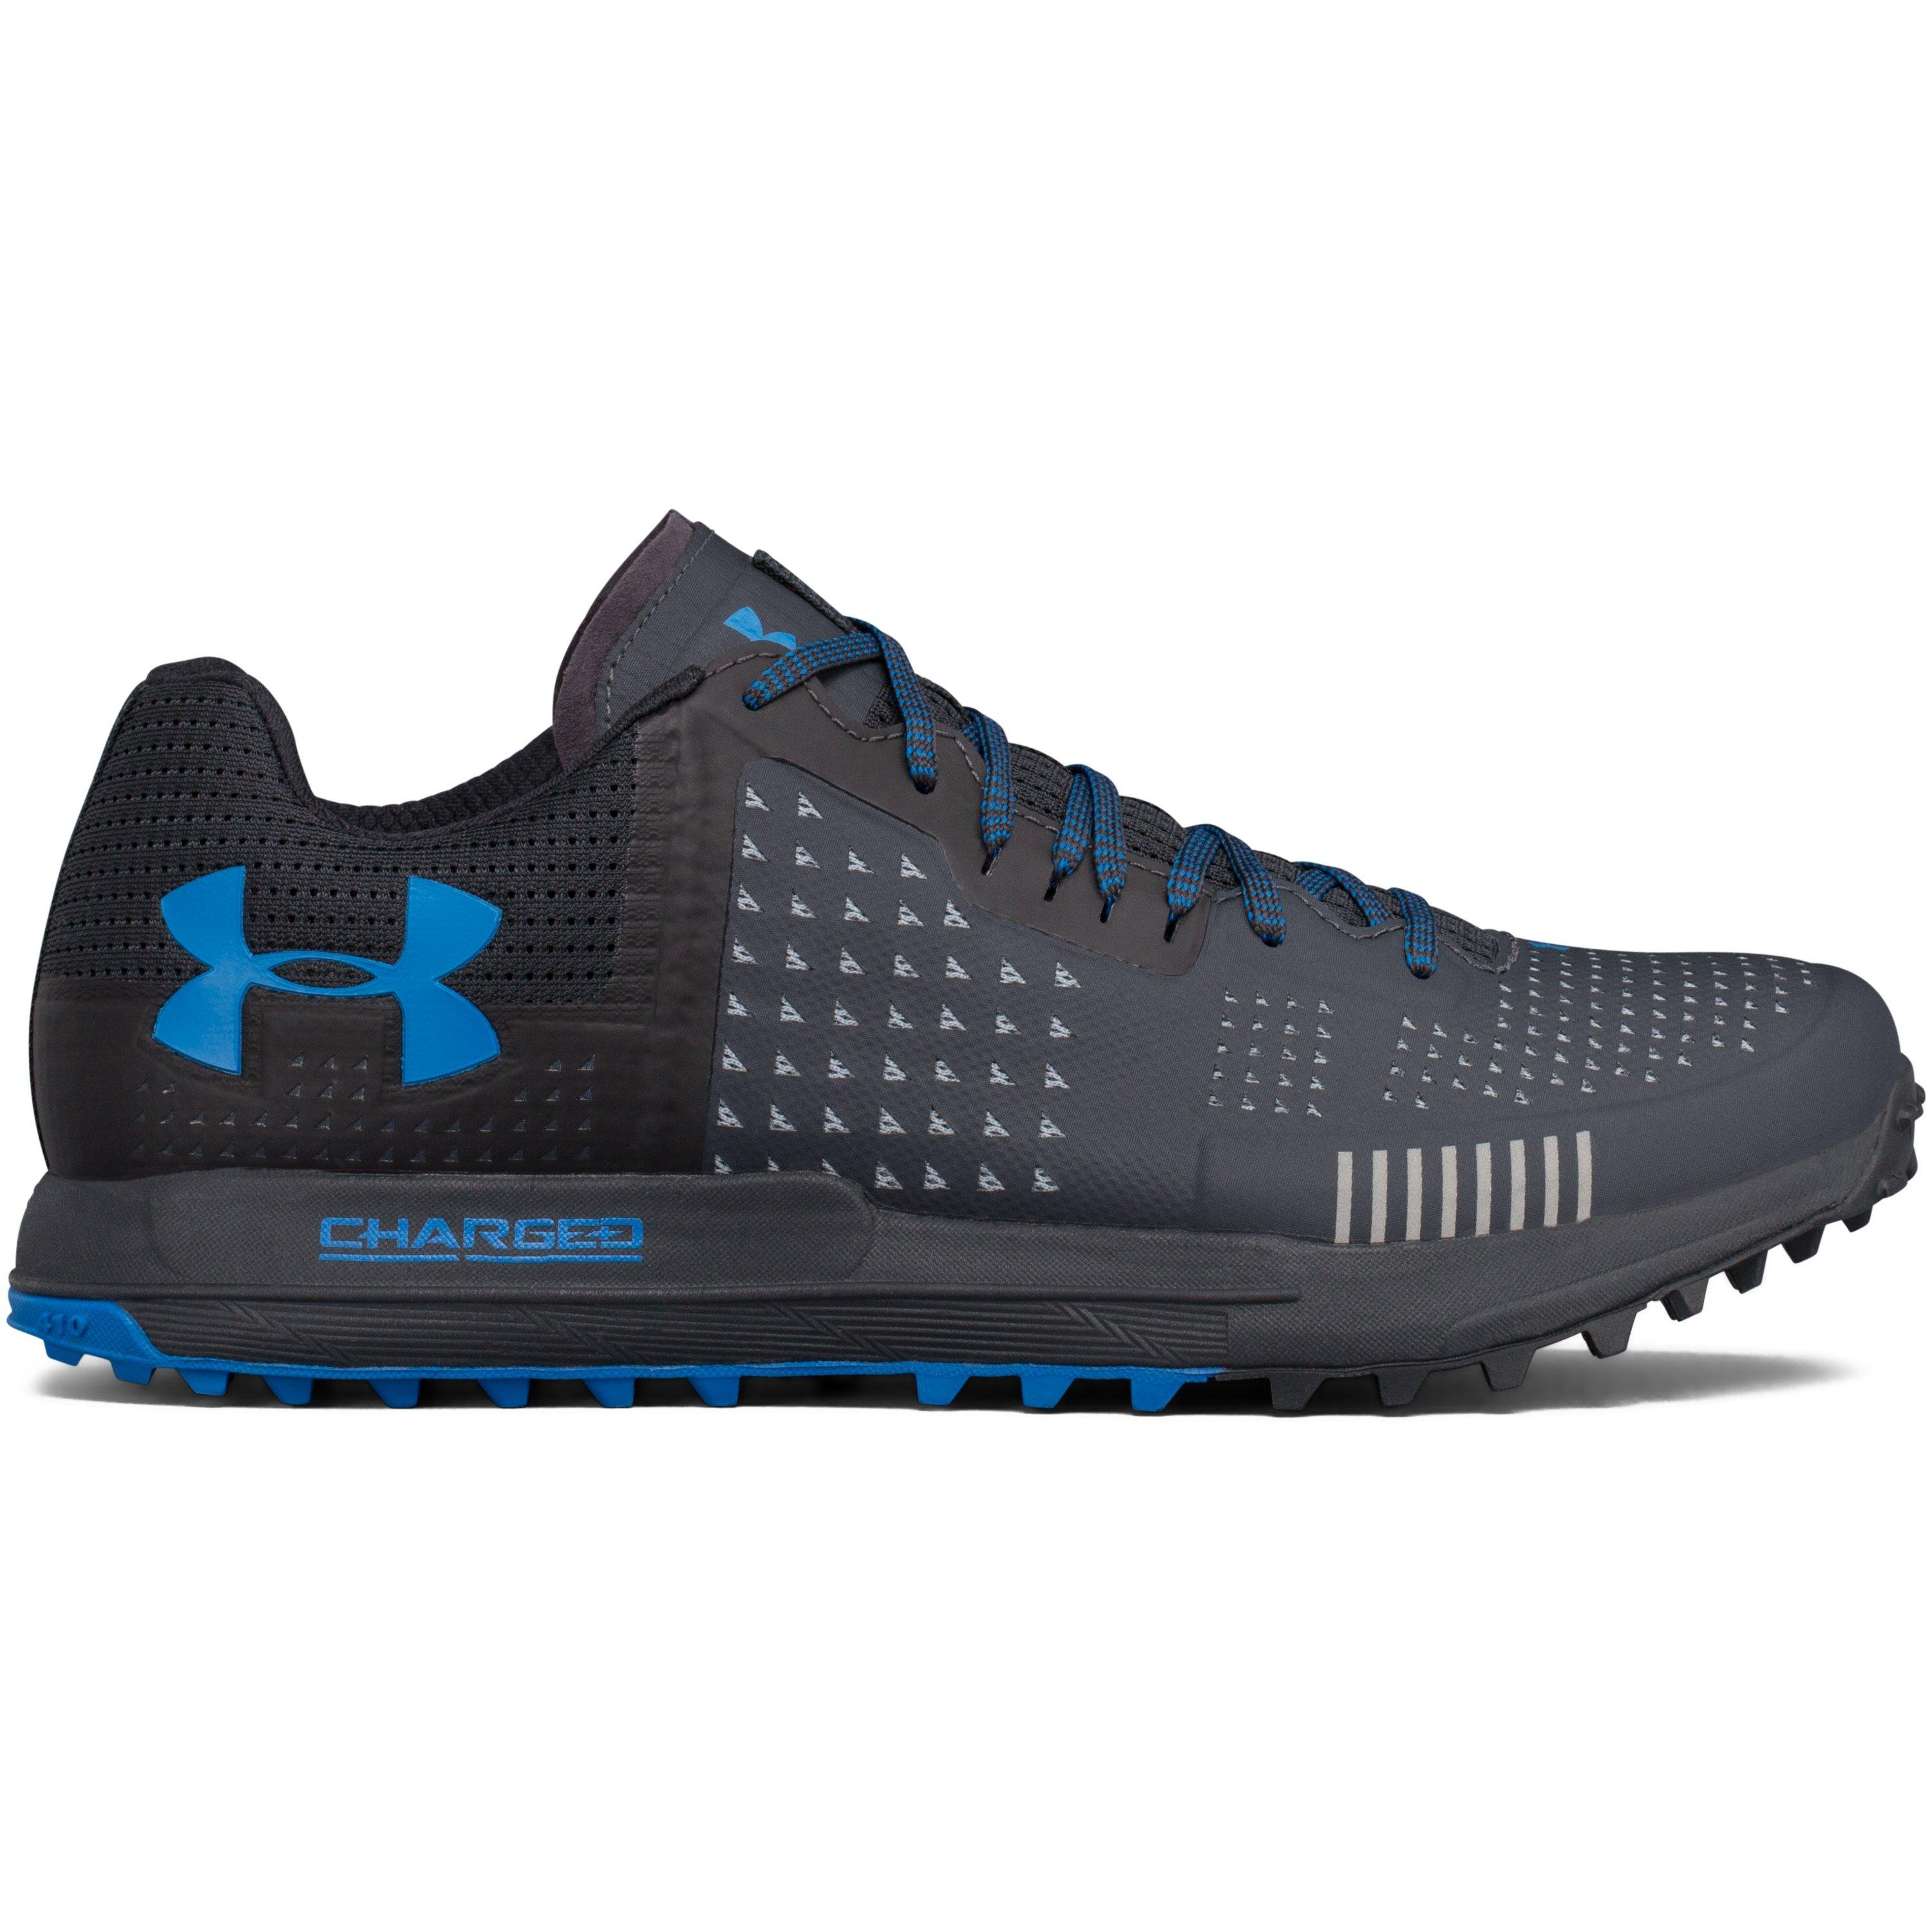 Under armour Men's Ua Horizon Rtt Trail Running Shoes in Blue for Men ...